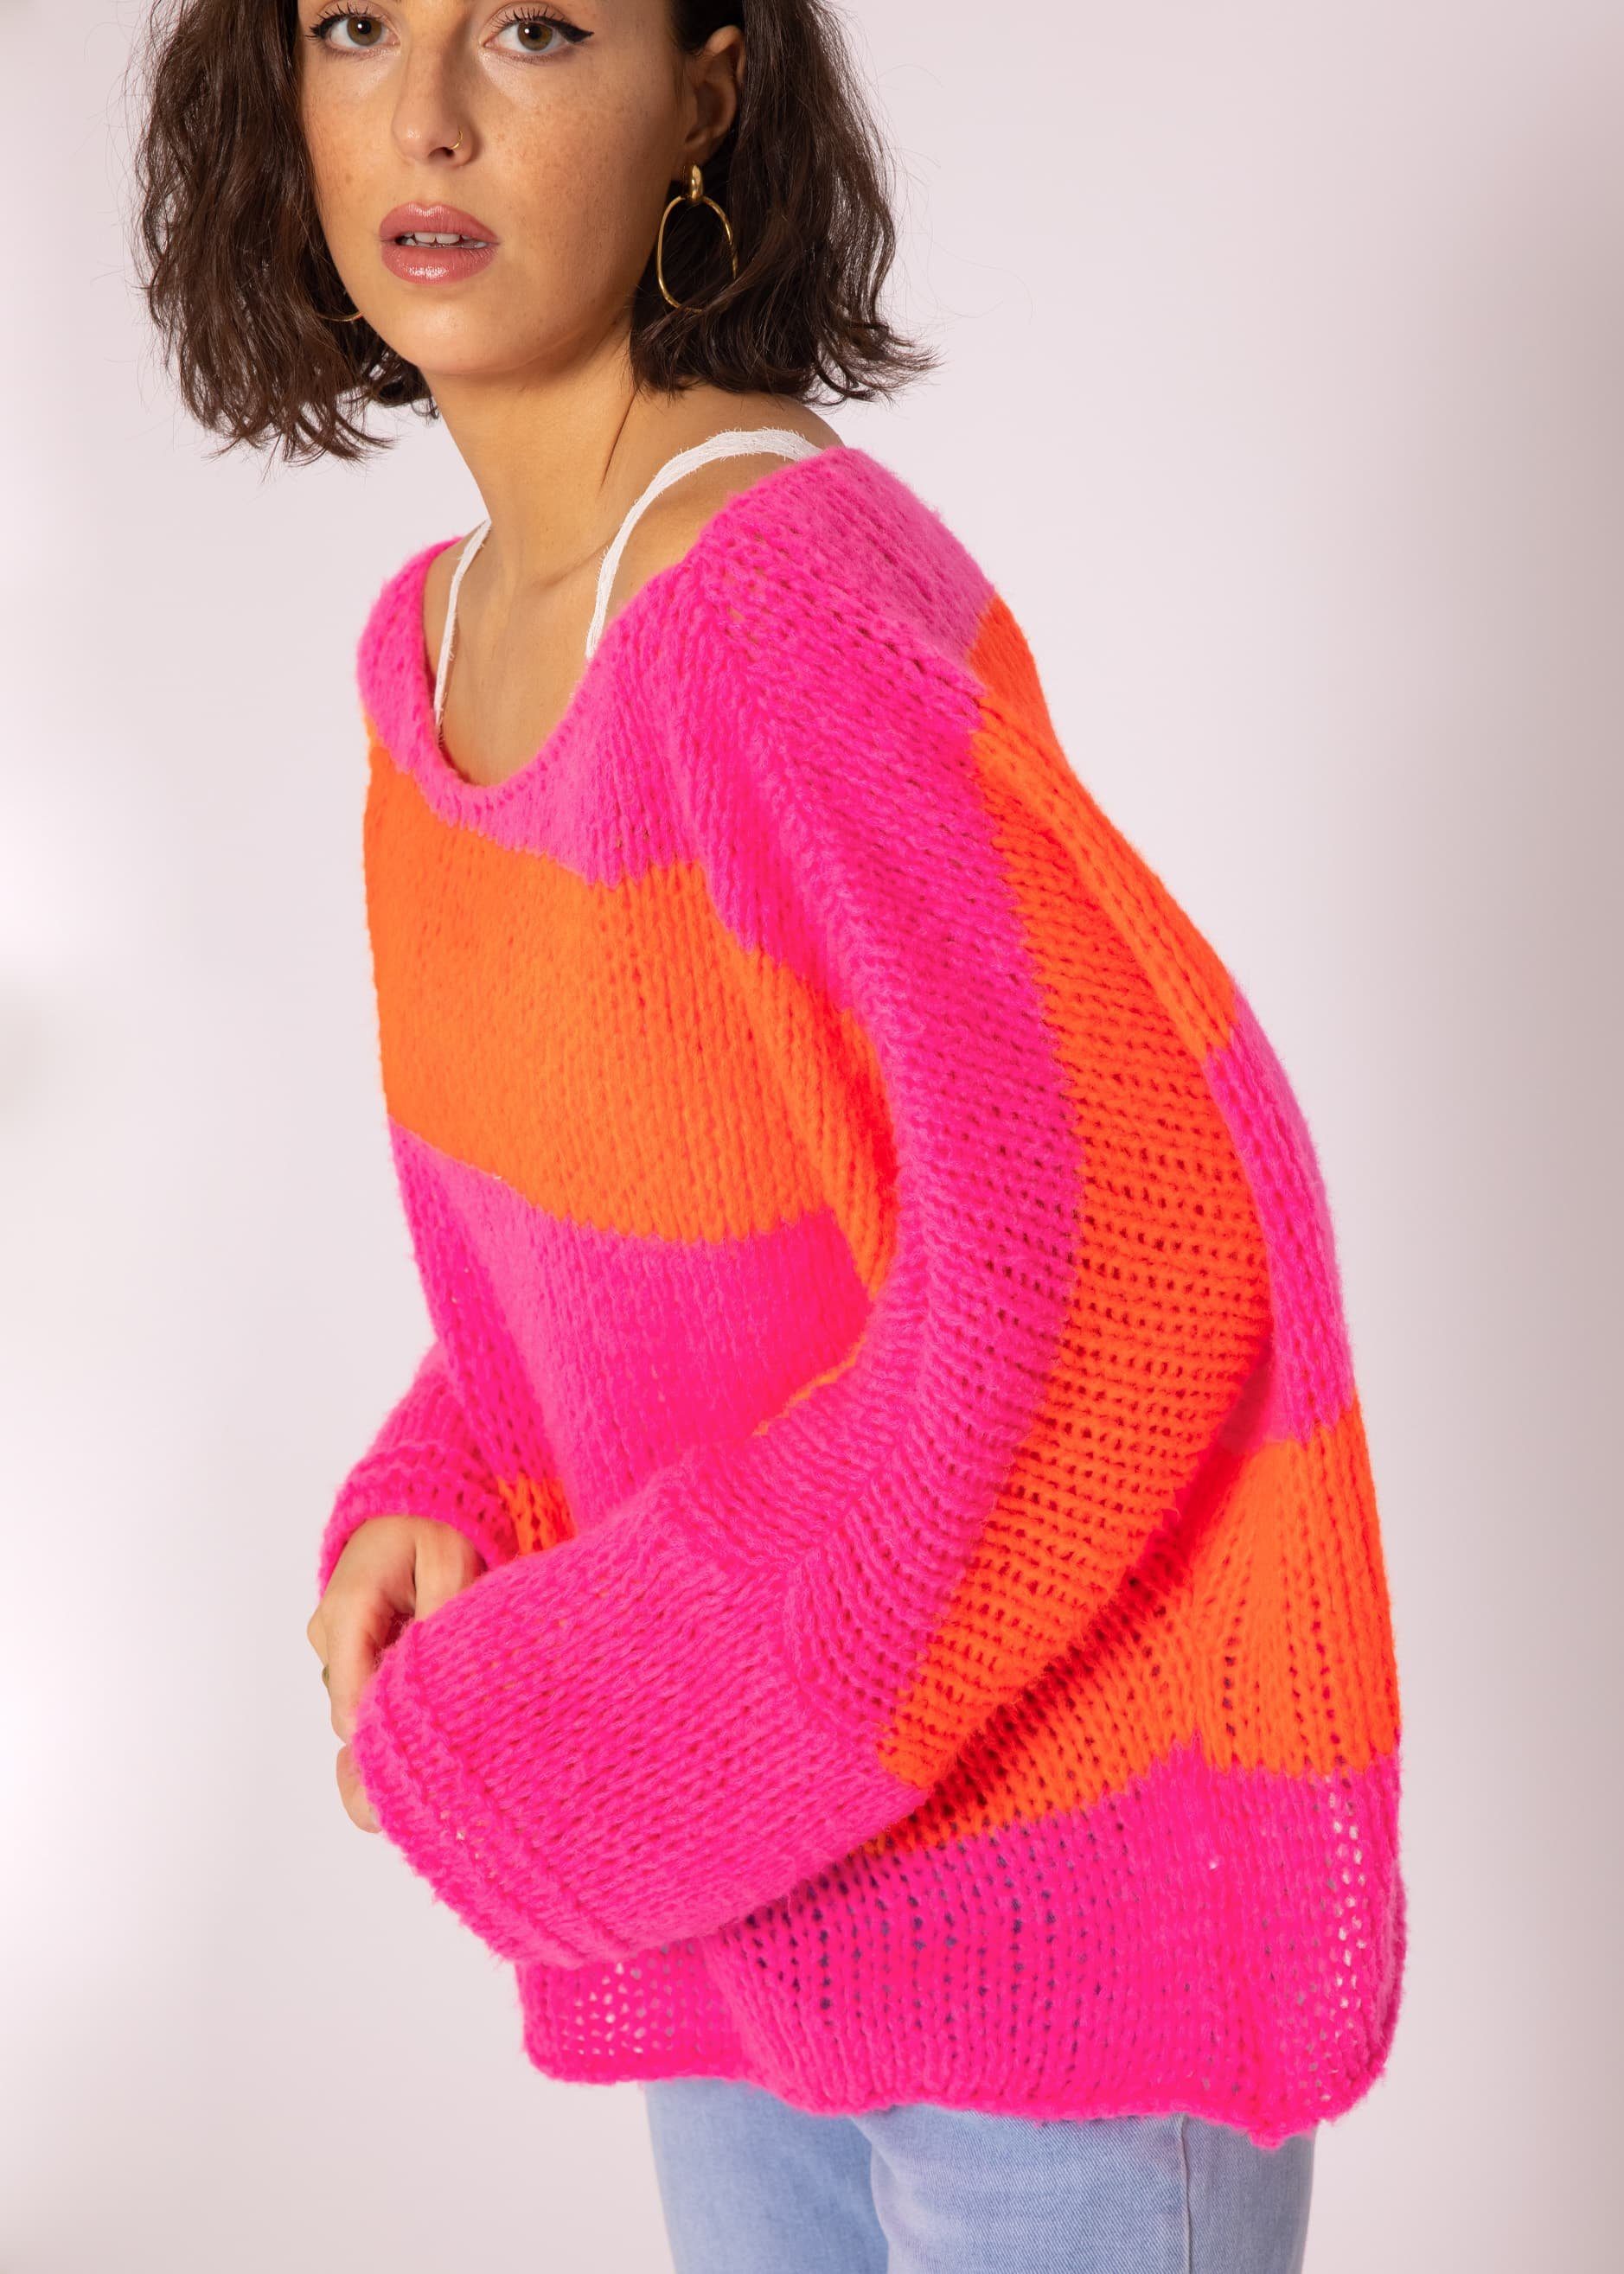 SASSYCLASSY Strickpullover Oversize Pullover Damen aus weichem Grobstrick Lässiger Strickpullover lang mit Streifen, Made in Italy Orange, Pink